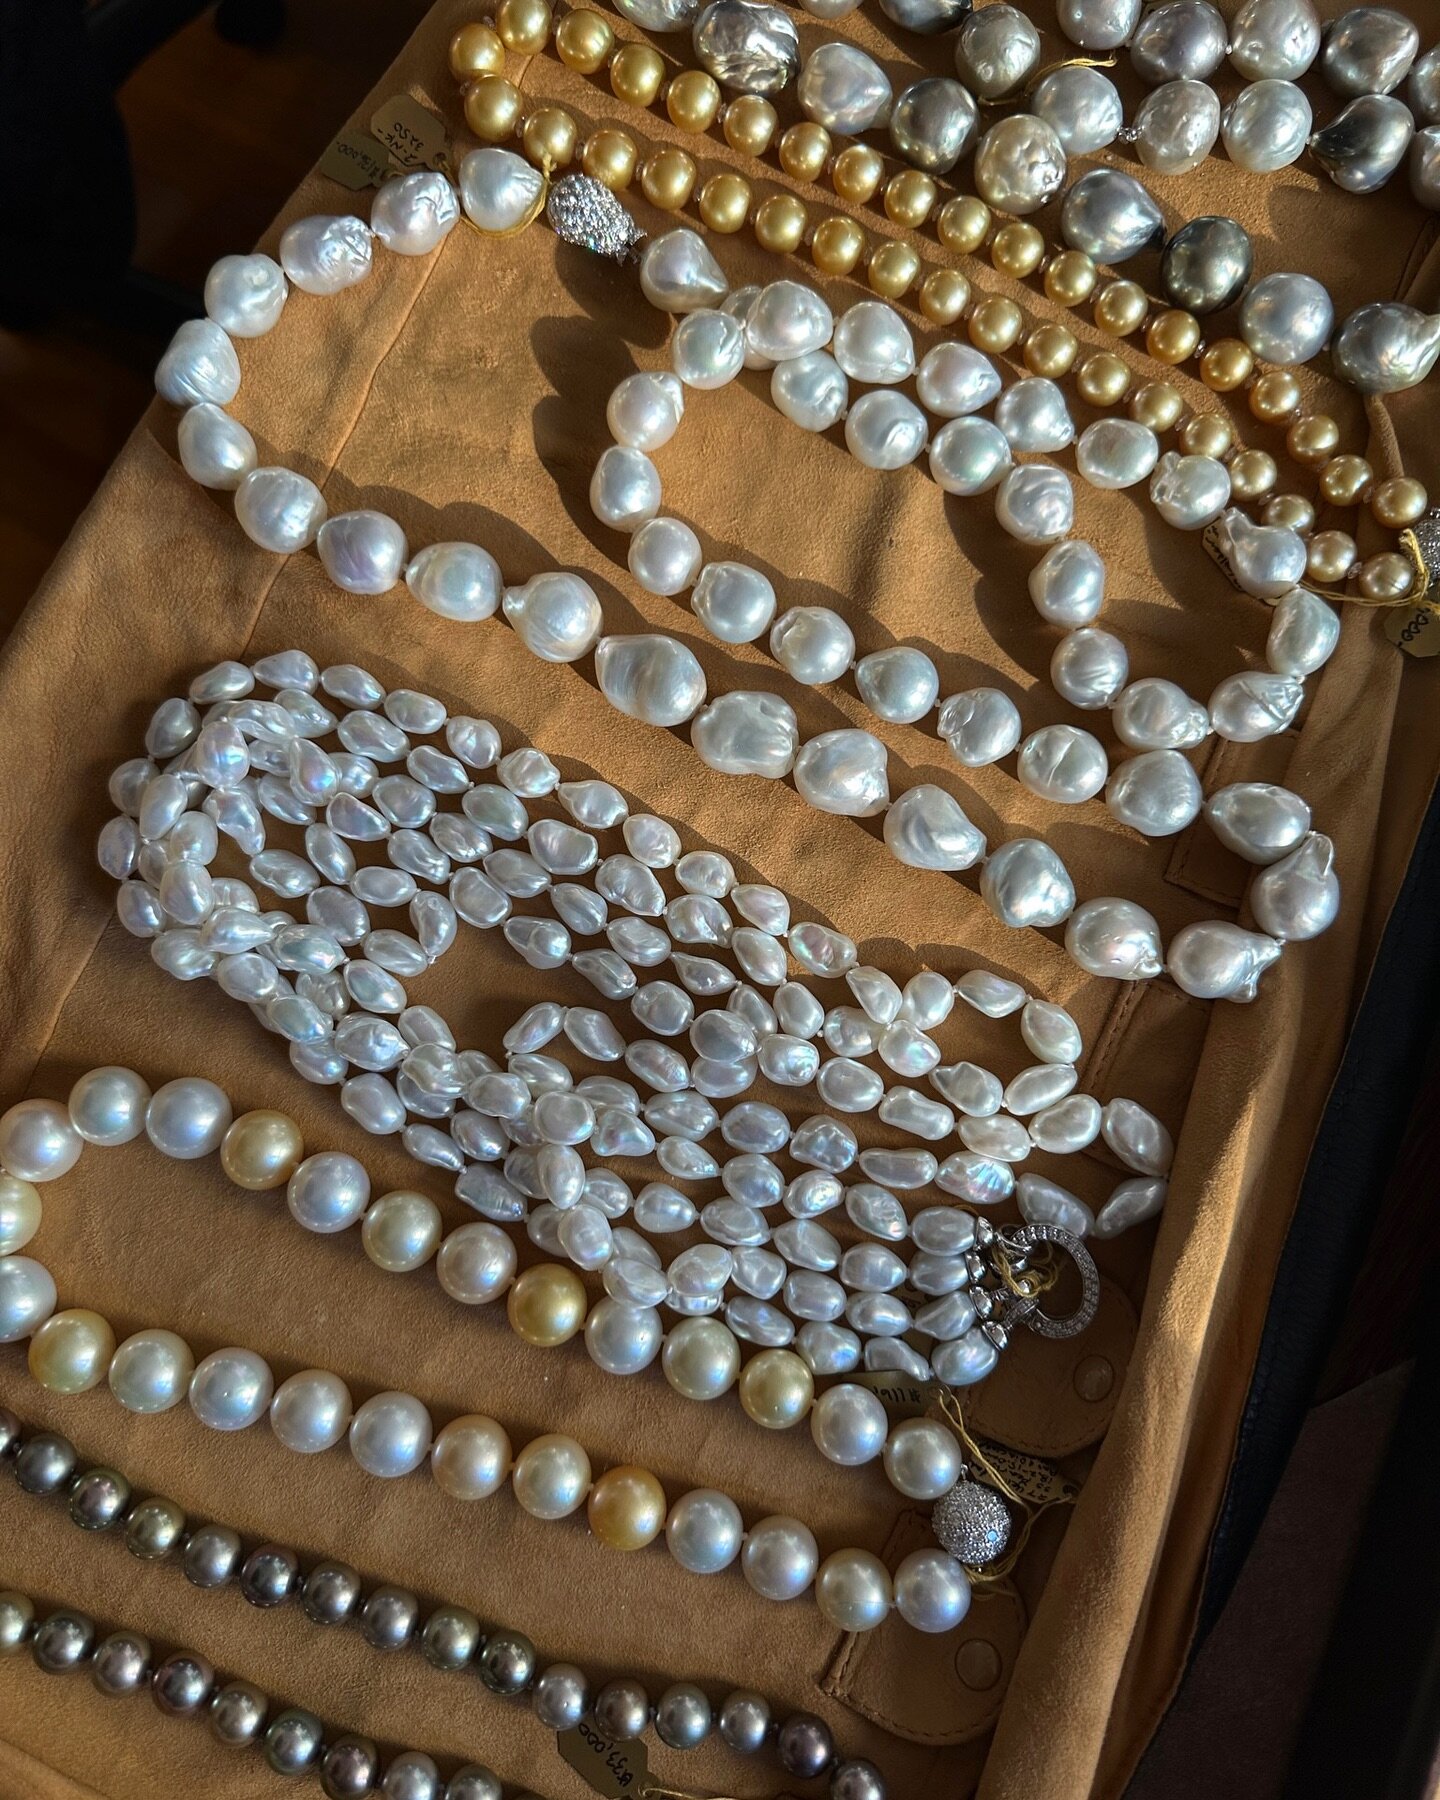 Pearls make the world go round 😉✨
.
.
.
#finejewelery #pearlnecklace #pearljewelery #pearl #jewleryoftheday #jewelryaddiction  #eclatjewels #instajewellery #collector #newyork #winterstyles #gem #bijoux #handmadejewelry #winterjewelry